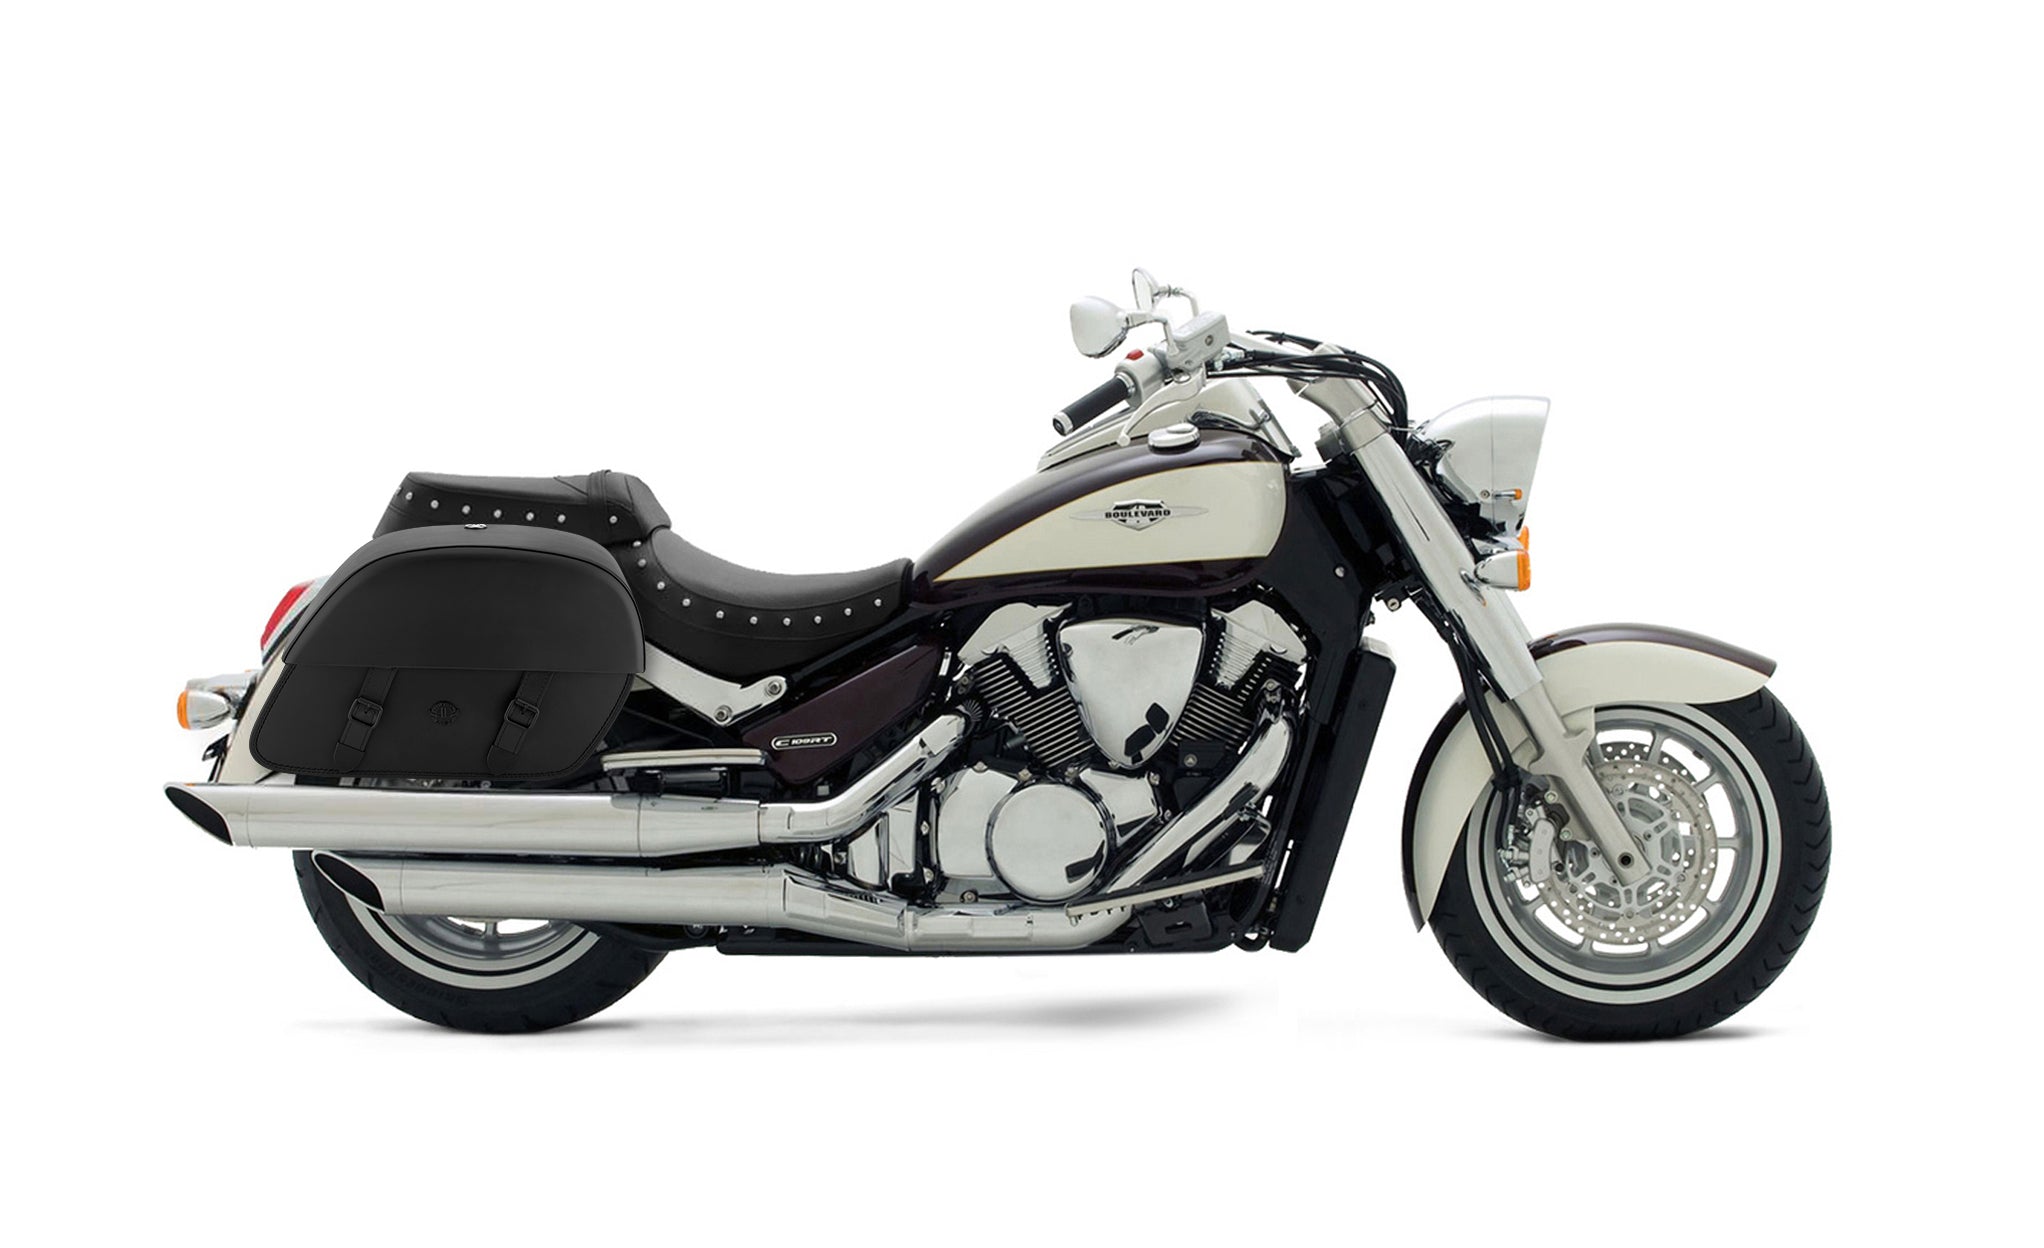 Viking Baelor Large Suzuki Boulevard C109 Leather Motorcycle Saddlebags on Bike Photo @expand